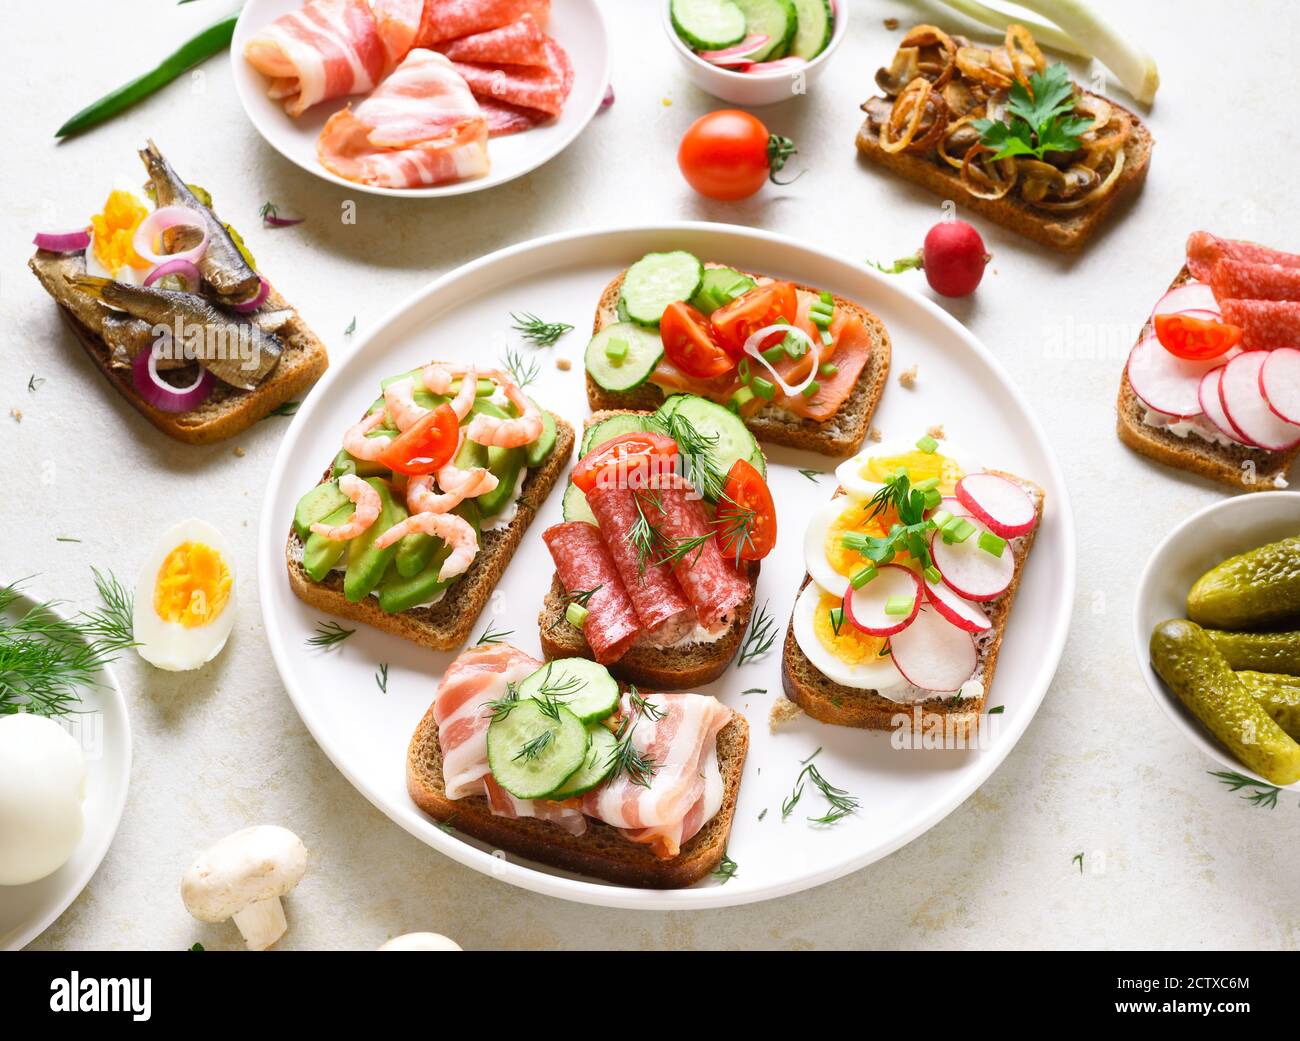 Sandwichs ouverts à base de viande, de légumes et de fruits de mer sur fond de pierre légère. En-cas savoureux et sains. Banque D'Images